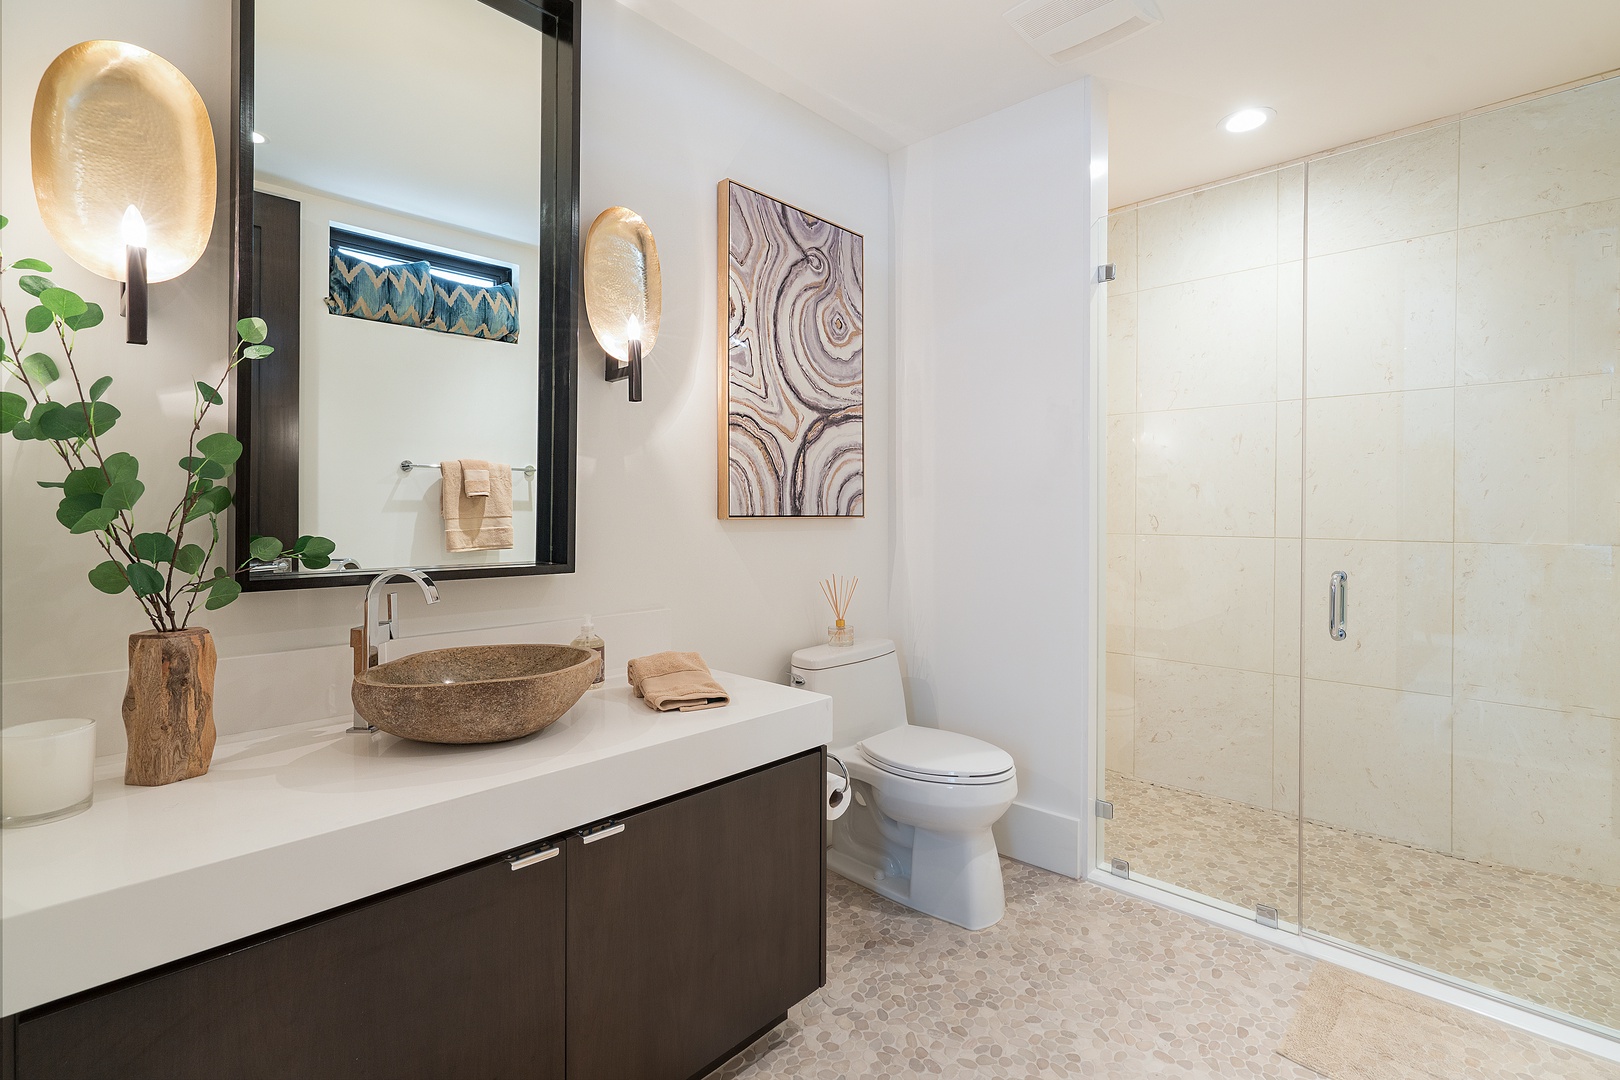 Honolulu Vacation Rentals, Diamond Head Grandeur - Guest bathroom with walk-in shower